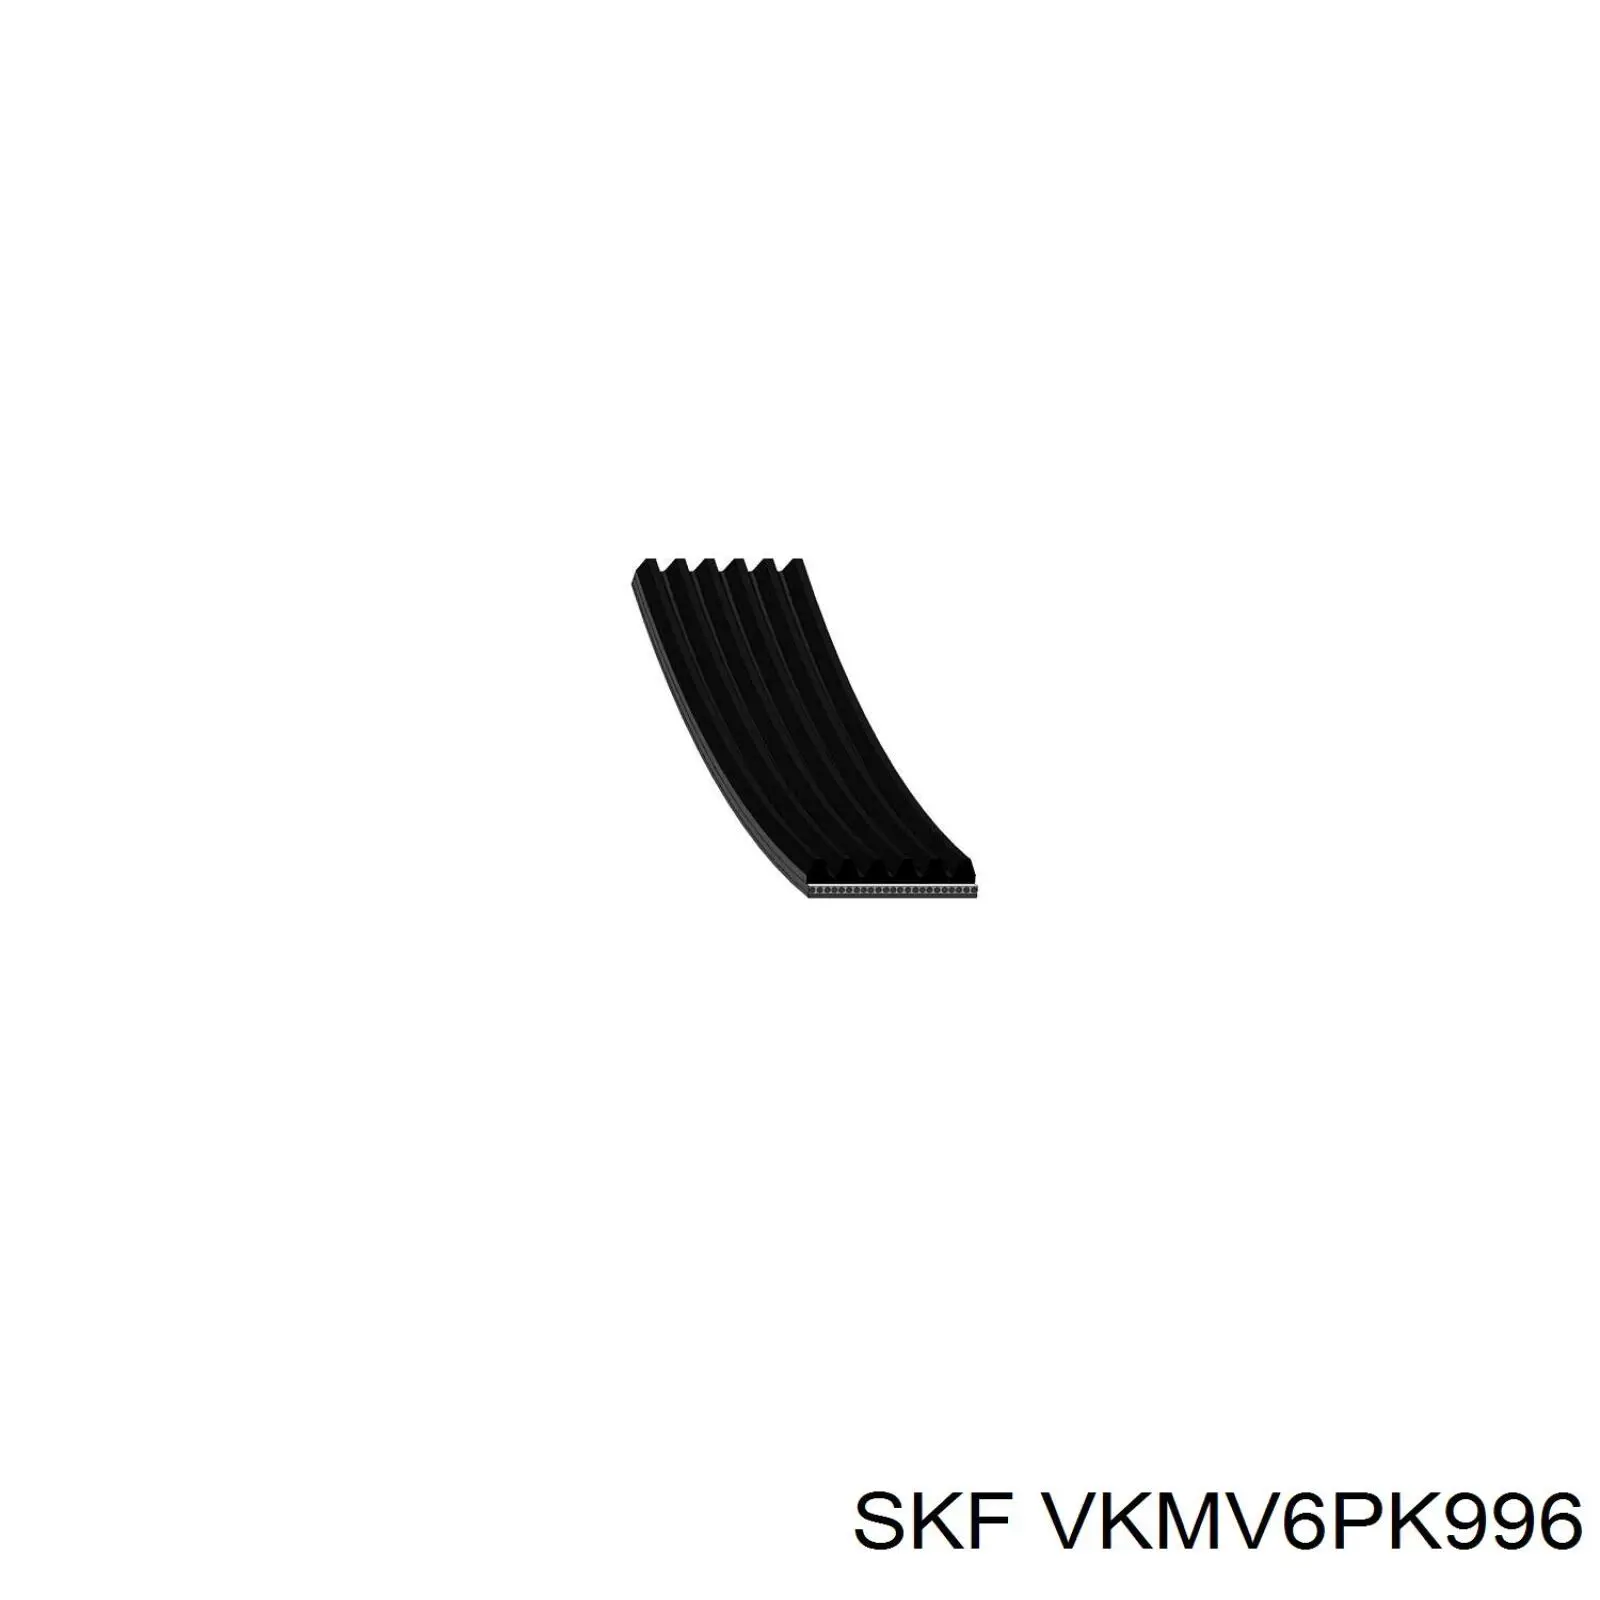 VKMV6PK996 SKF correa trapezoidal